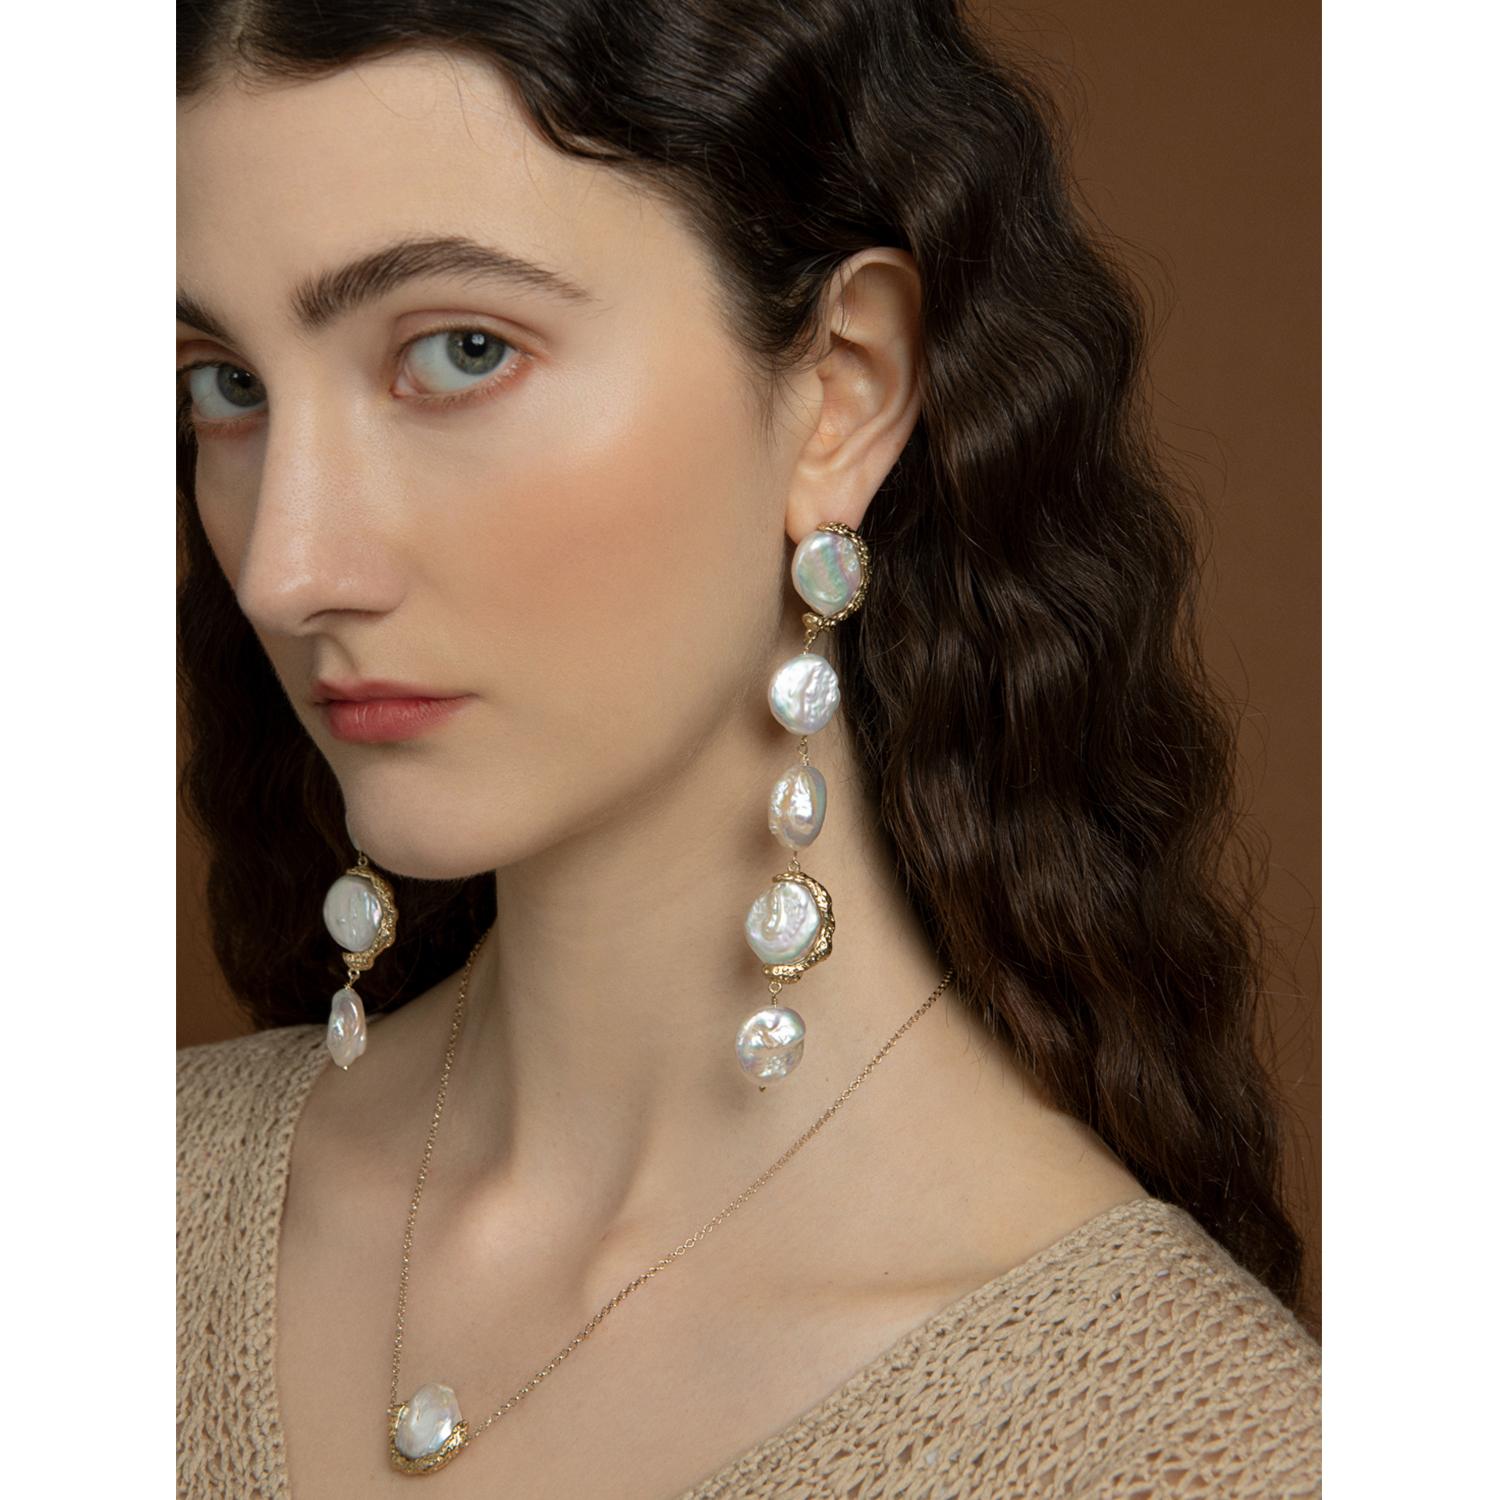 Die Ad Astra Pearl Statement Earrings von Vintouch Jewels aus 18 Karat vergoldetem Silber sind eine Hommage an die Einzigartigkeit jedes einzelnen Menschen, denn sie bestehen aus einzigartigen Barockperlen, die sanft an Ihren Ohrläppchen baumeln.